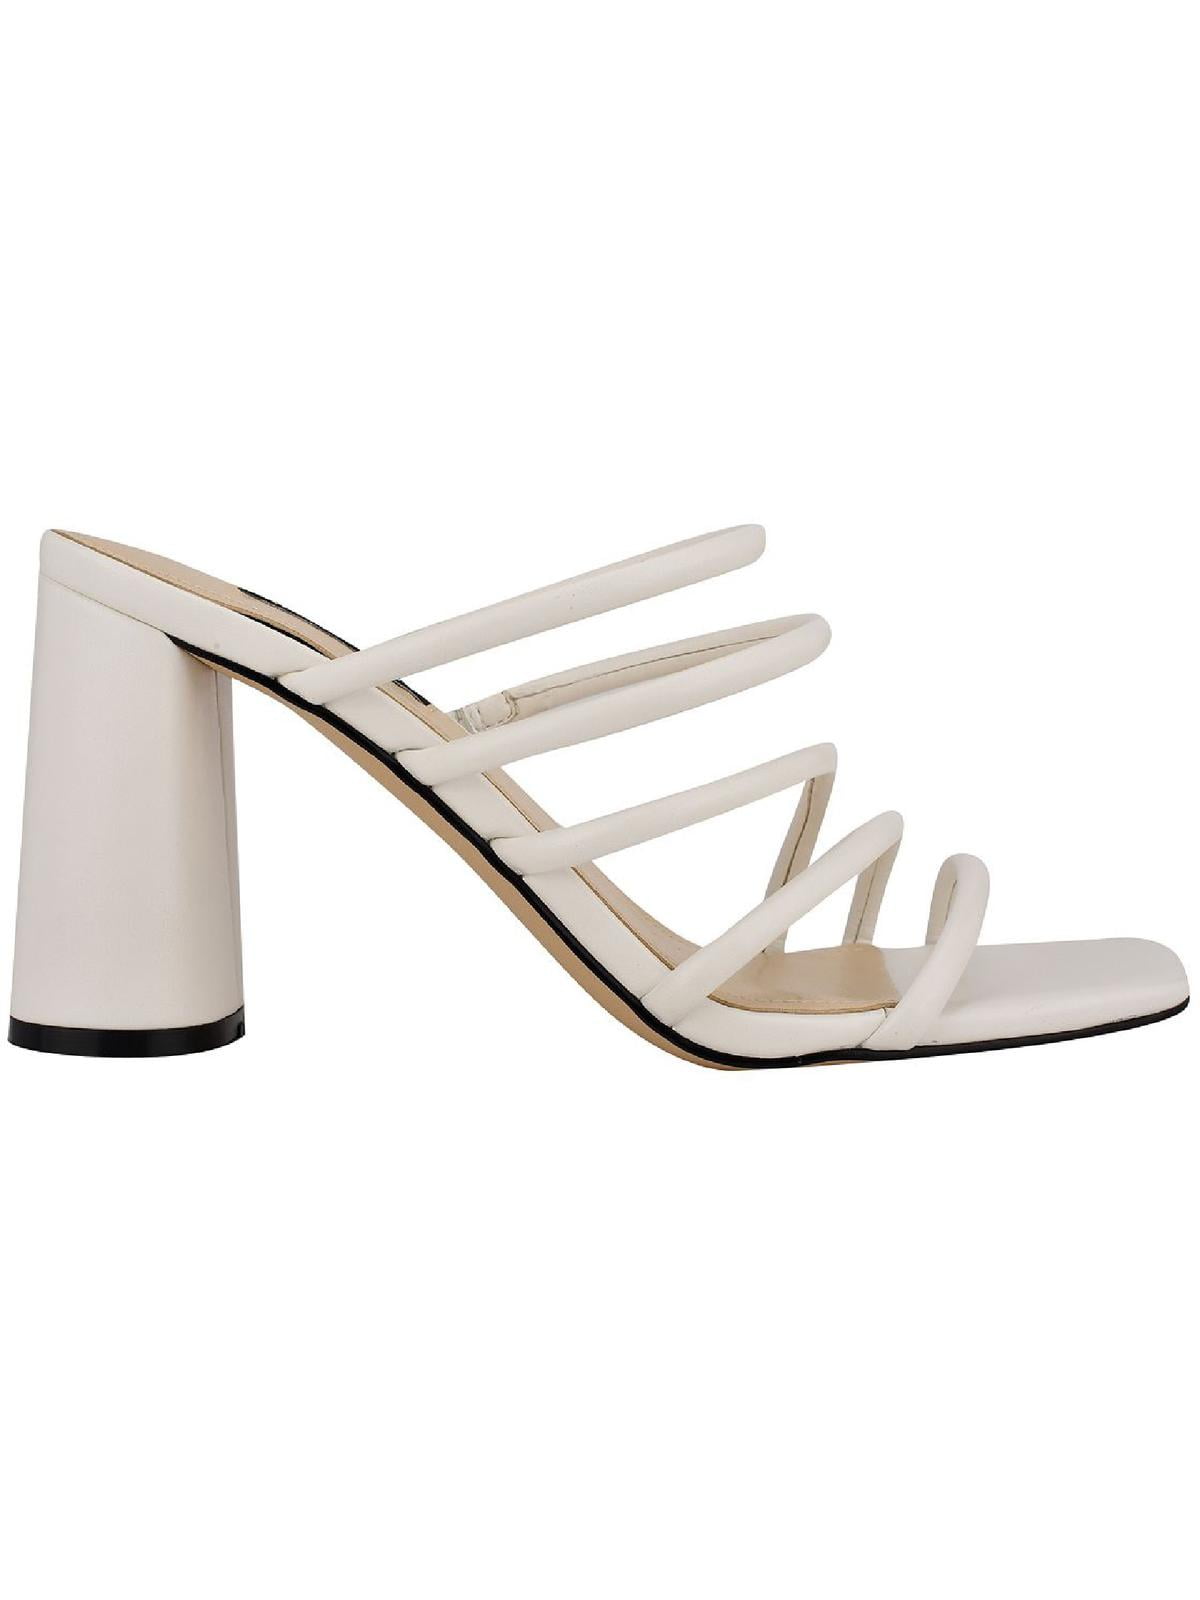 NINE WEST FOOTWEAR Womens Pruce Heeled Sandal, Size 9 | eBay